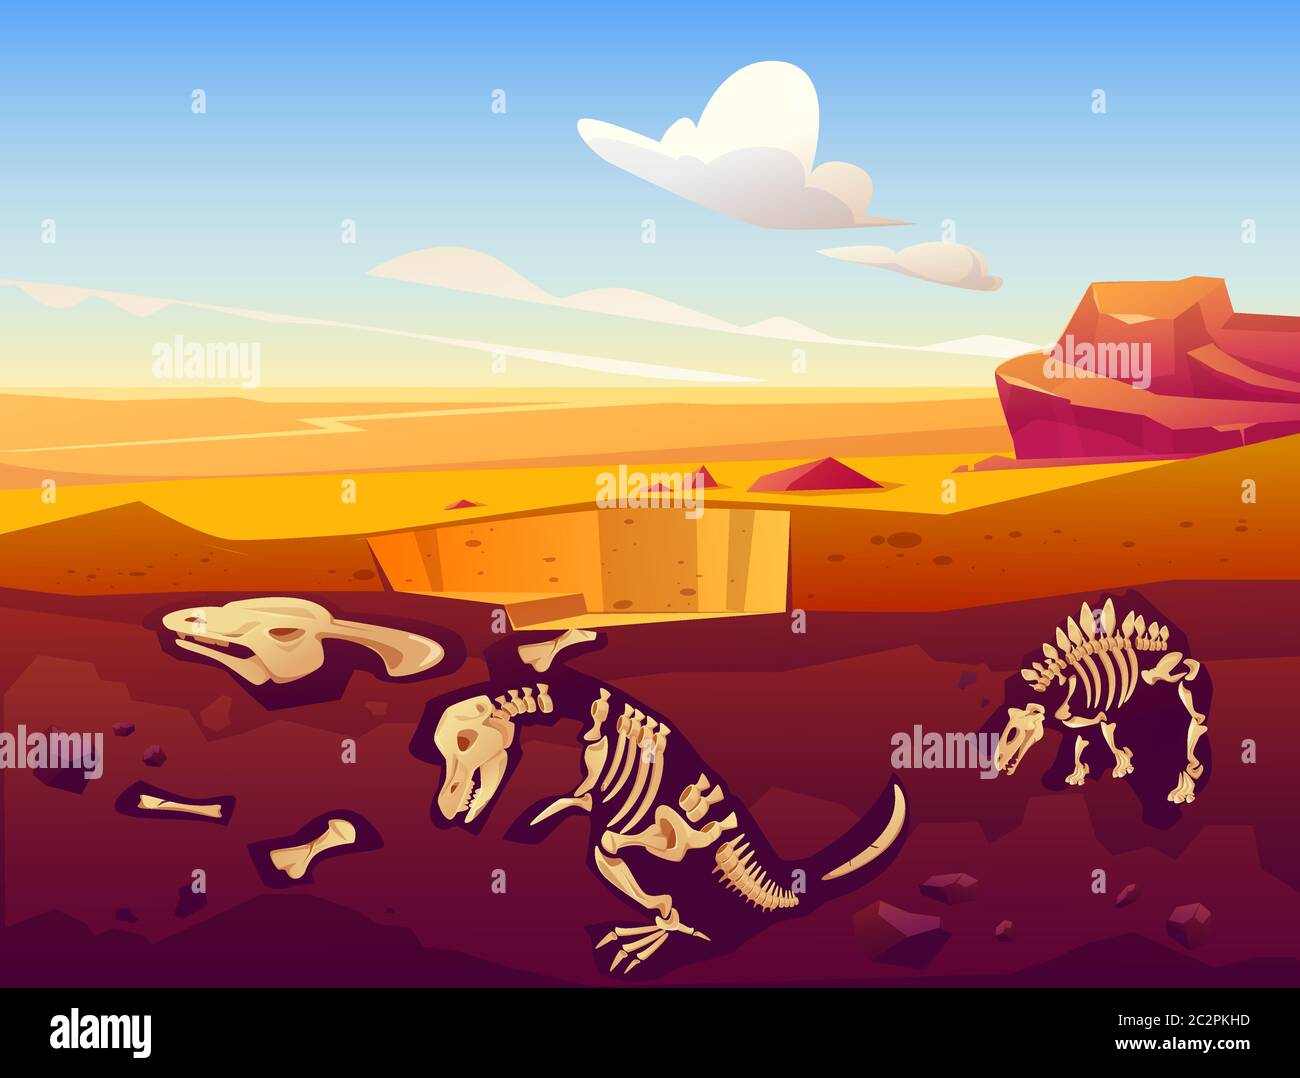 Fossil Dinosaurier Ausgrabung, Paläontologie und Archäologie Werke. Vektor-Cartoon-Illustration der Wüstenlandschaft mit vergrabenen Skeletten von prähistorischen Reptilien unterirdisch Stock Vektor